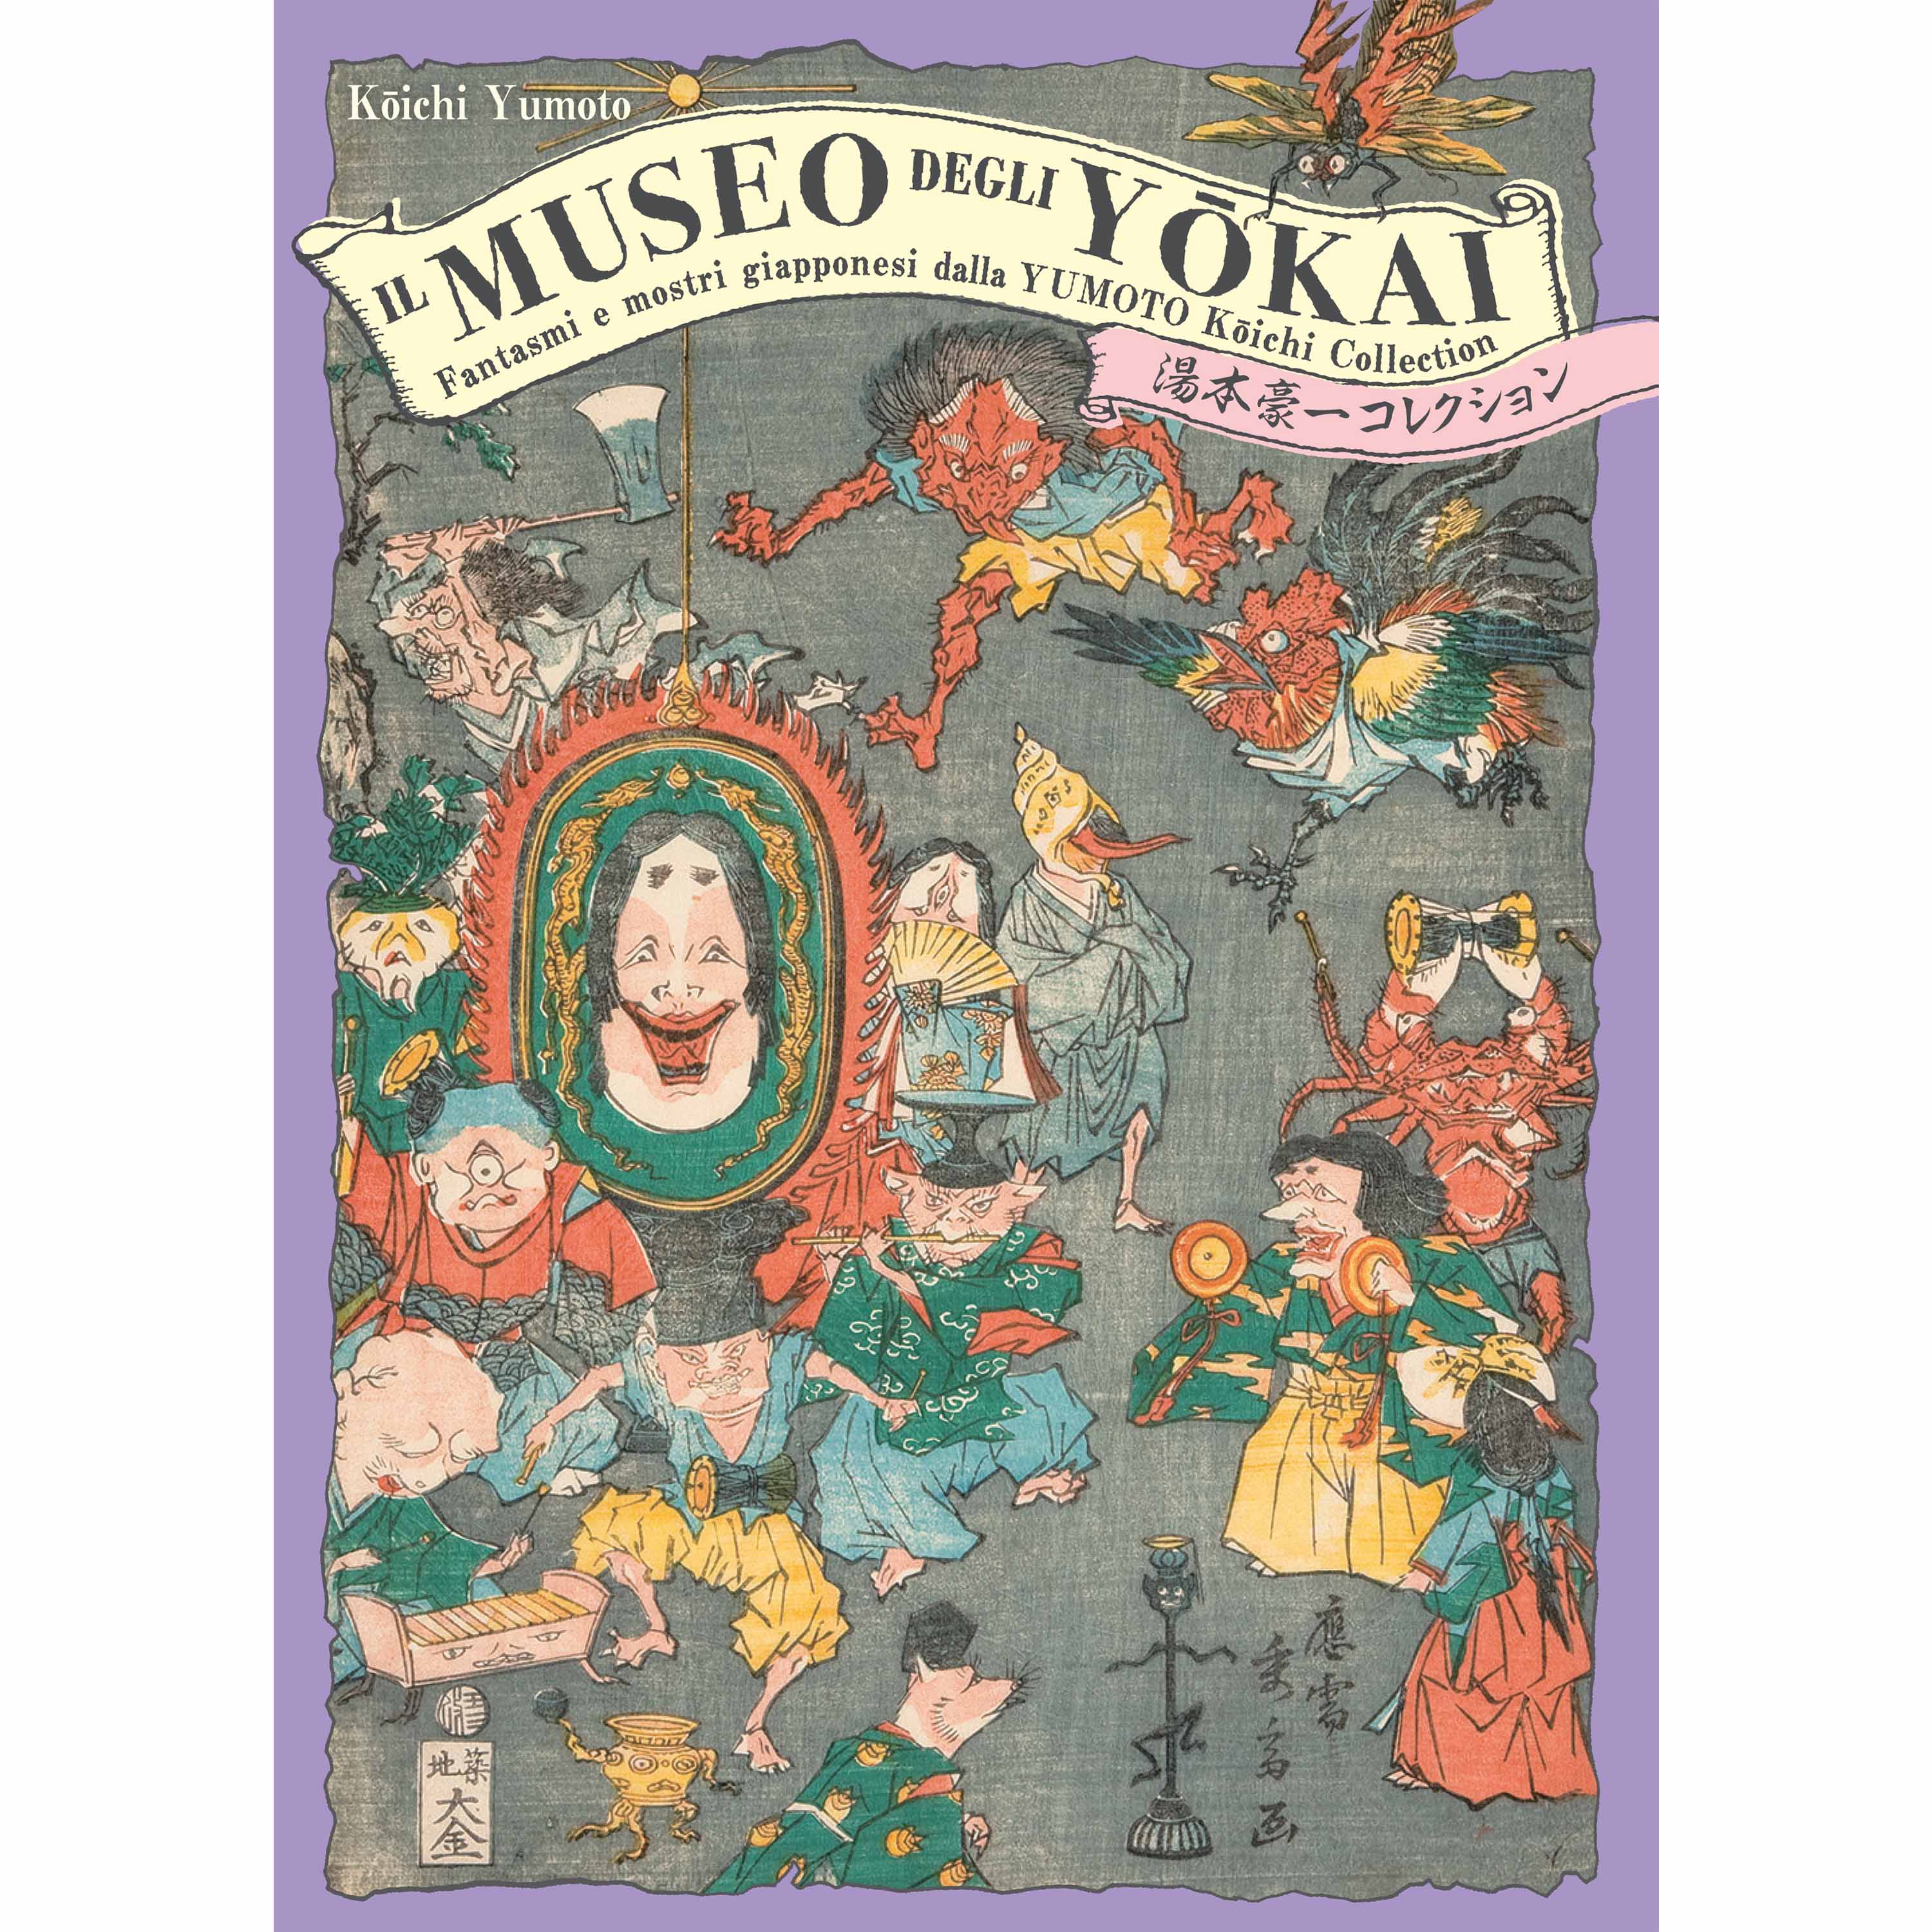 Japan Dreams: recensione della guida Mondadori ai luoghi otaku del Giappone